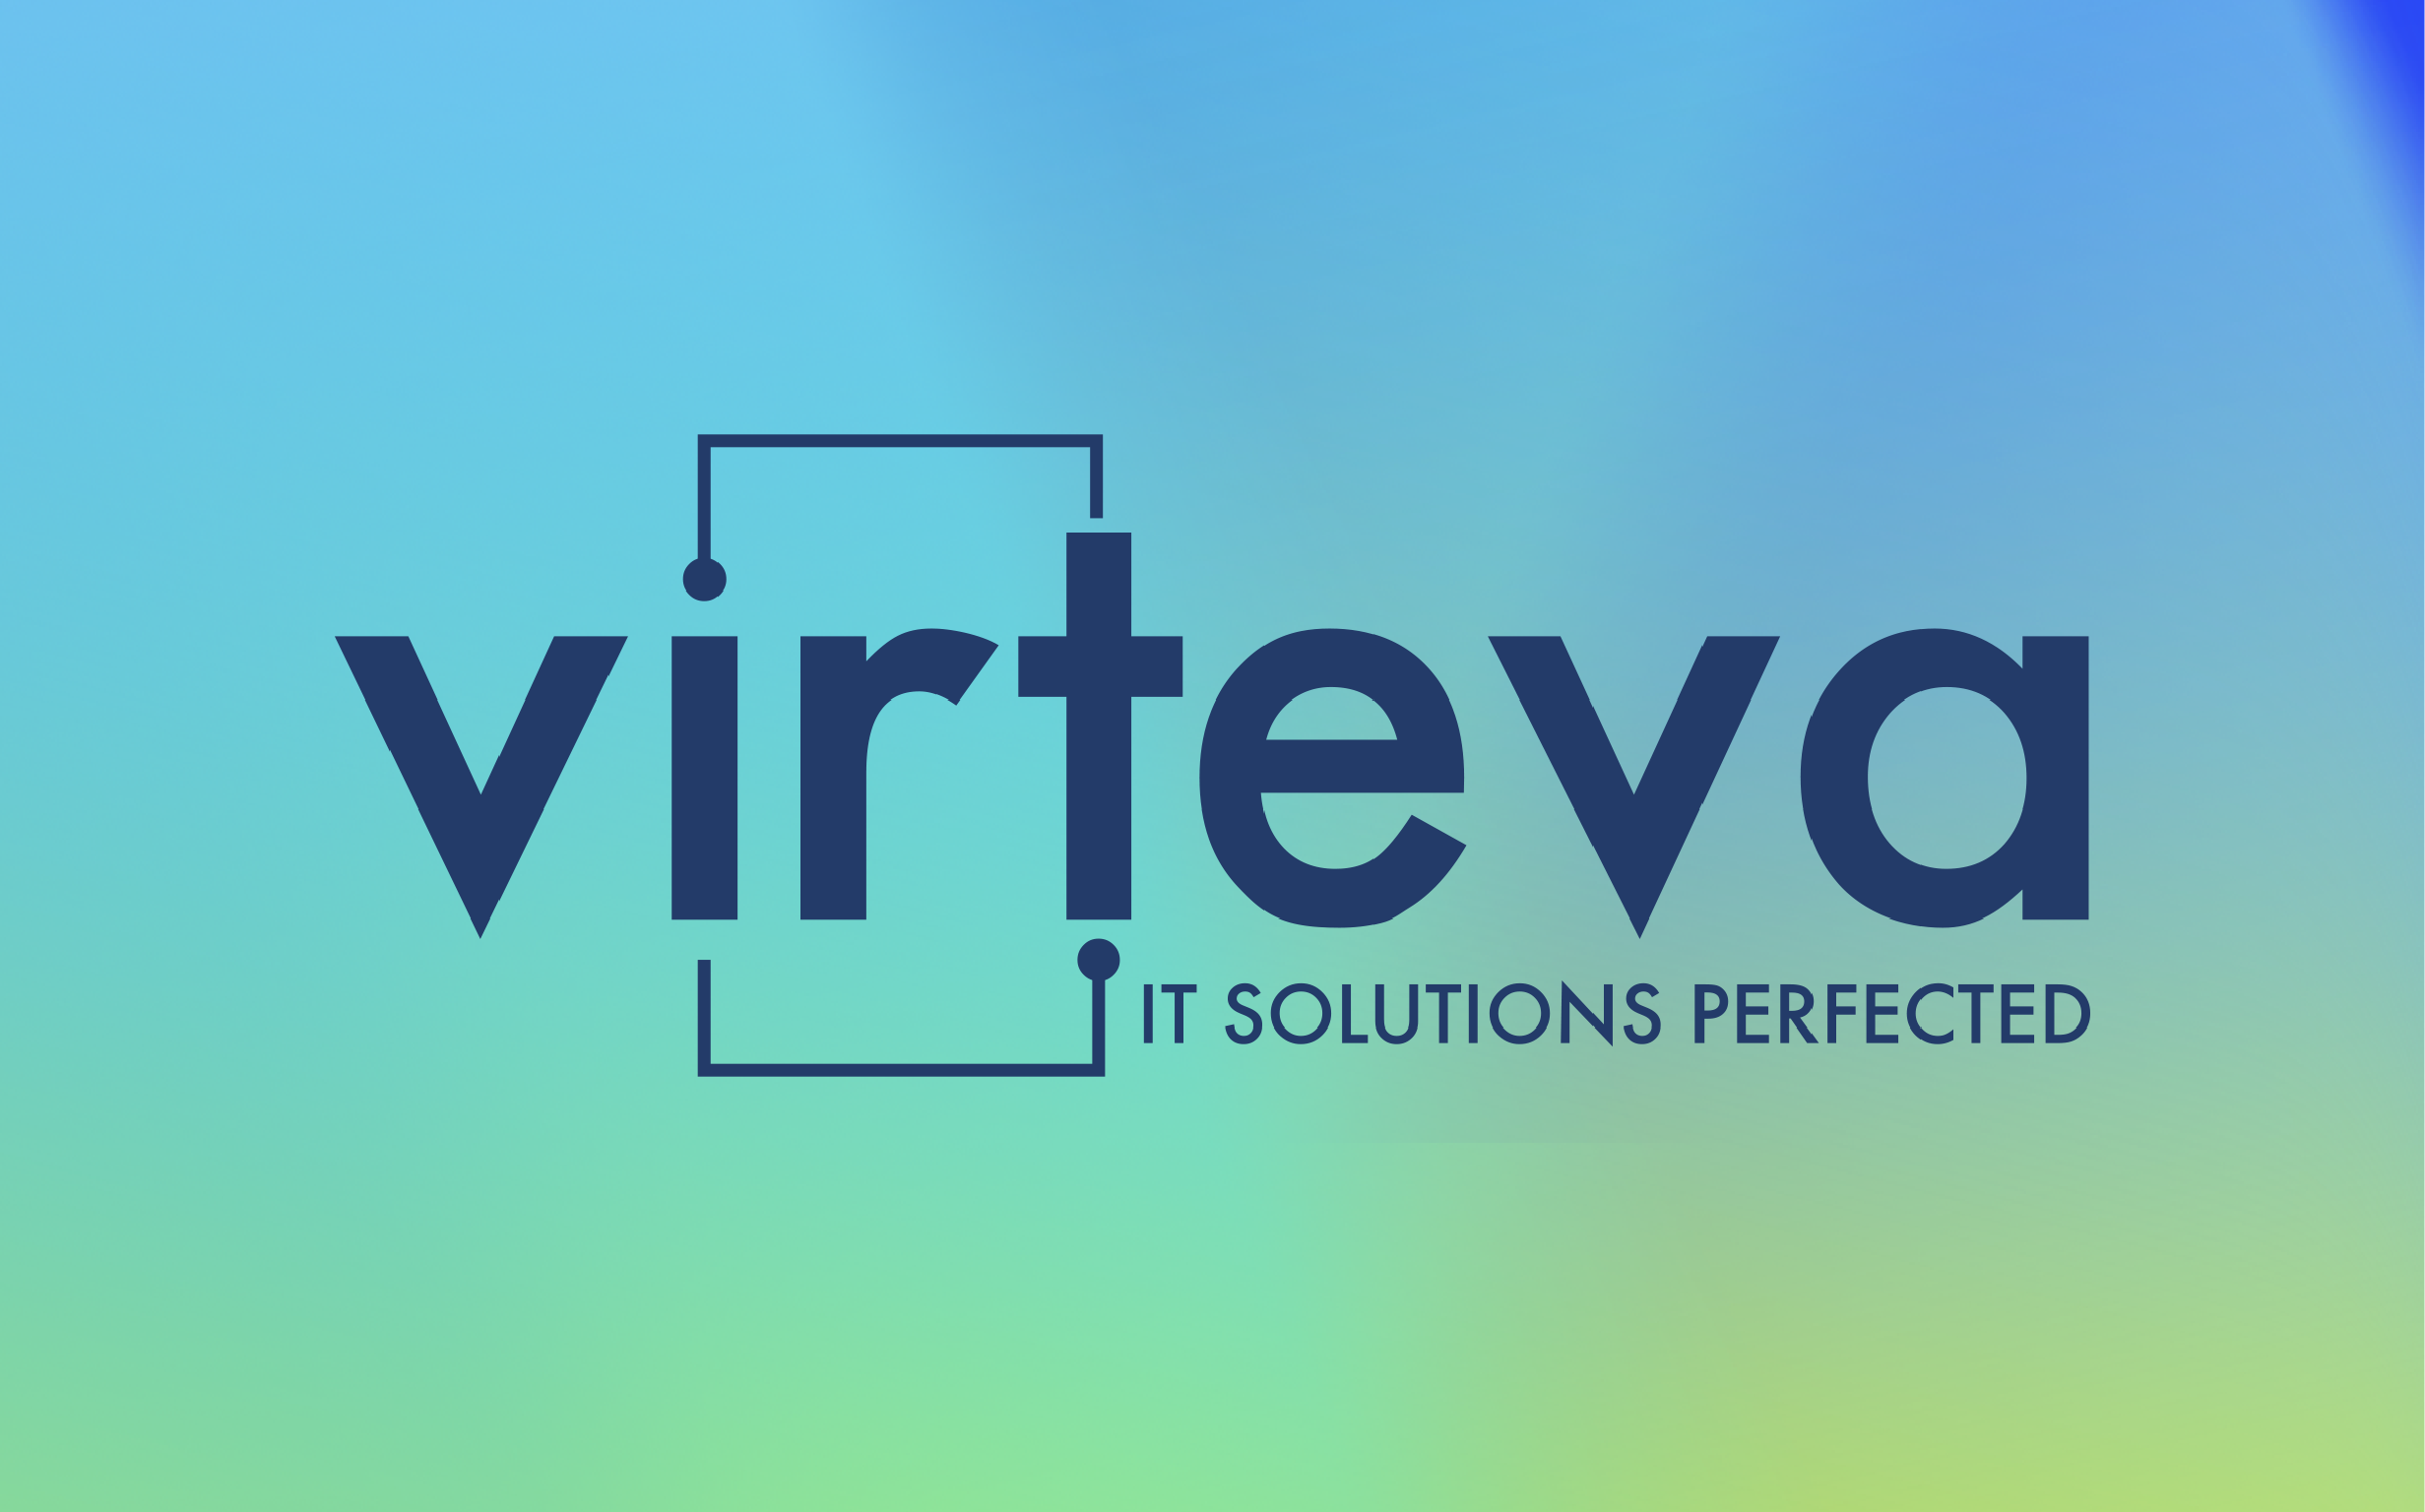 Virteva case study logo